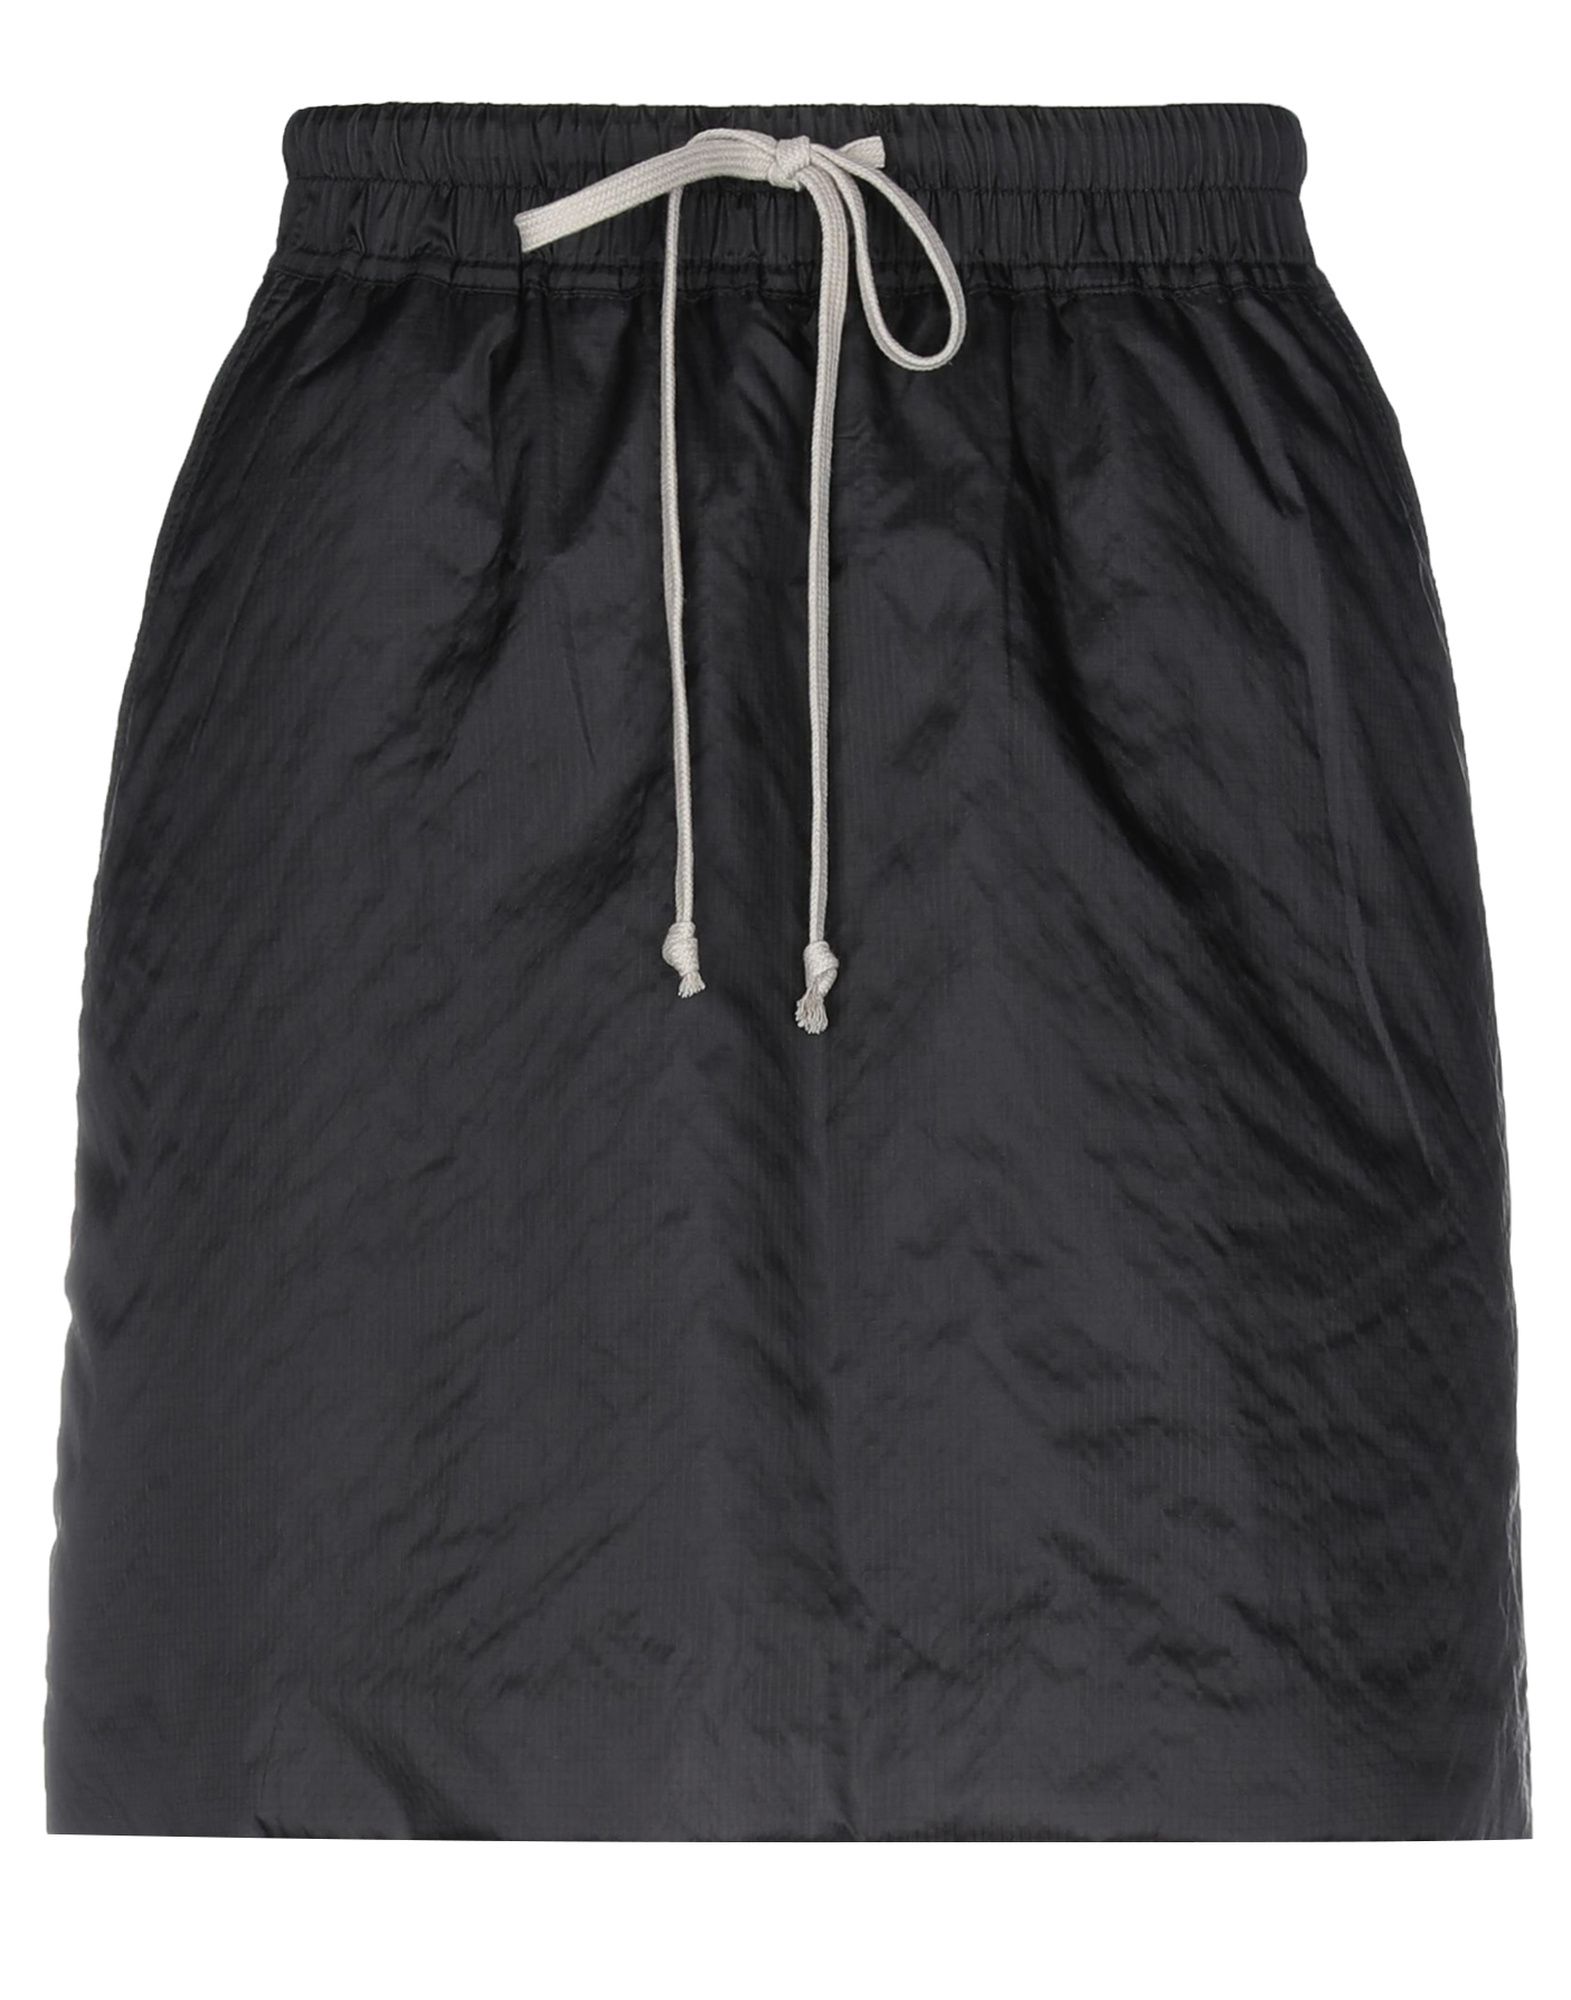 RICK OWENS DRKSHDW Mini skirt,13322130PD 6